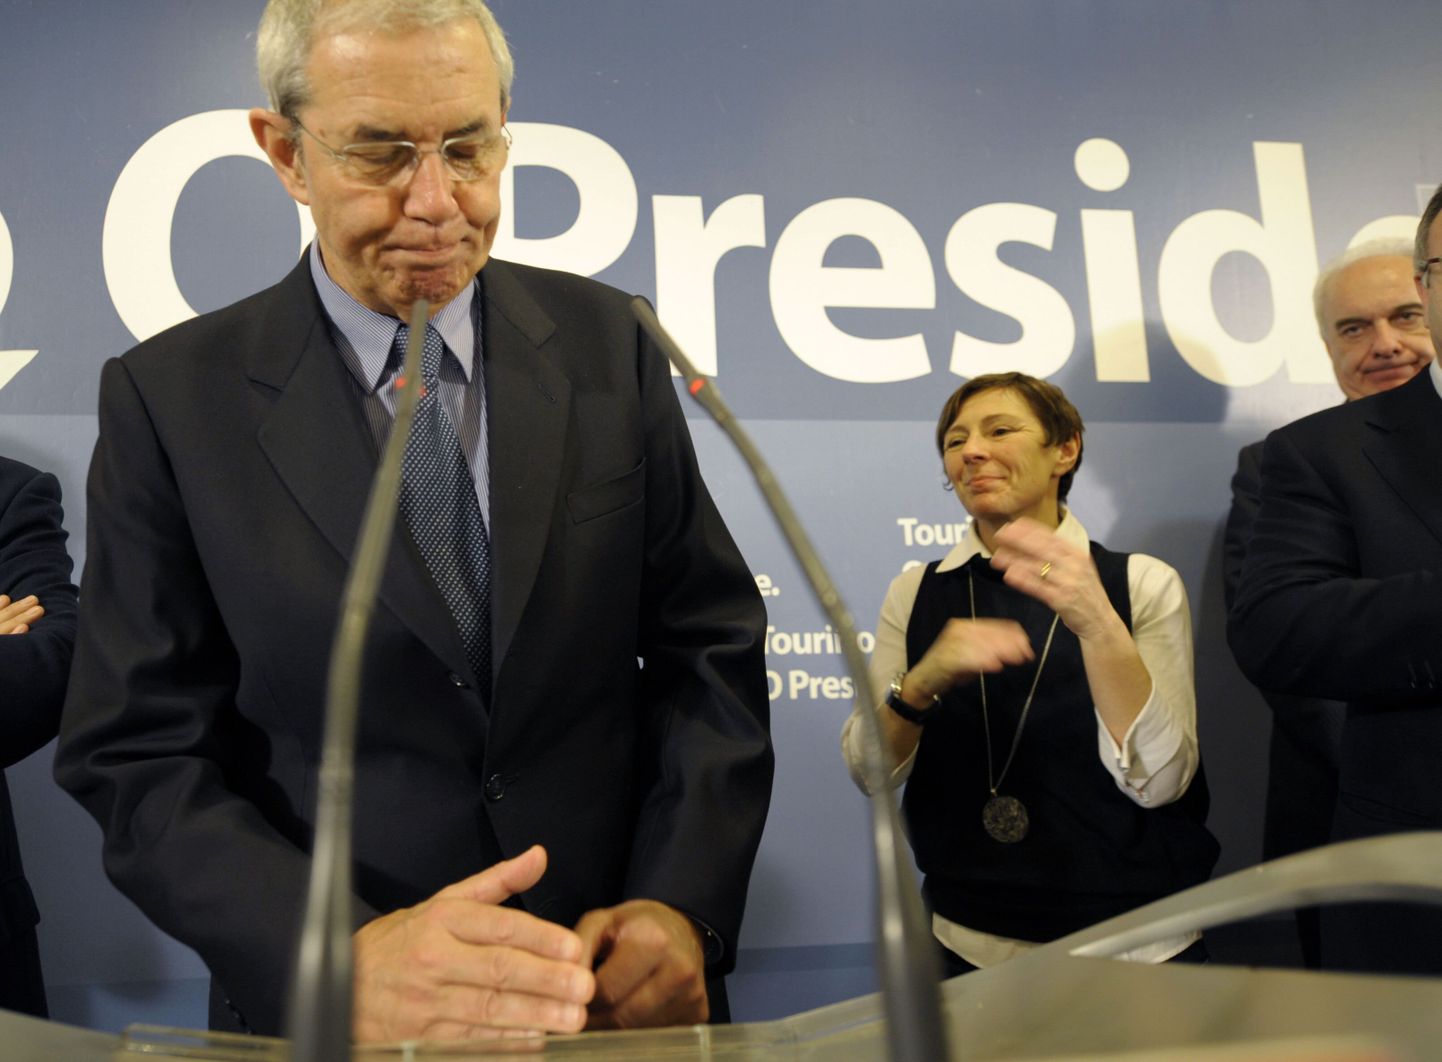 Sotsialistide kandidaat Emilio Perez Tourino pidi tunnistama erakonna kaotust Hispaania loodeosas asuva Galicia kohalike parlamendi valimistel.